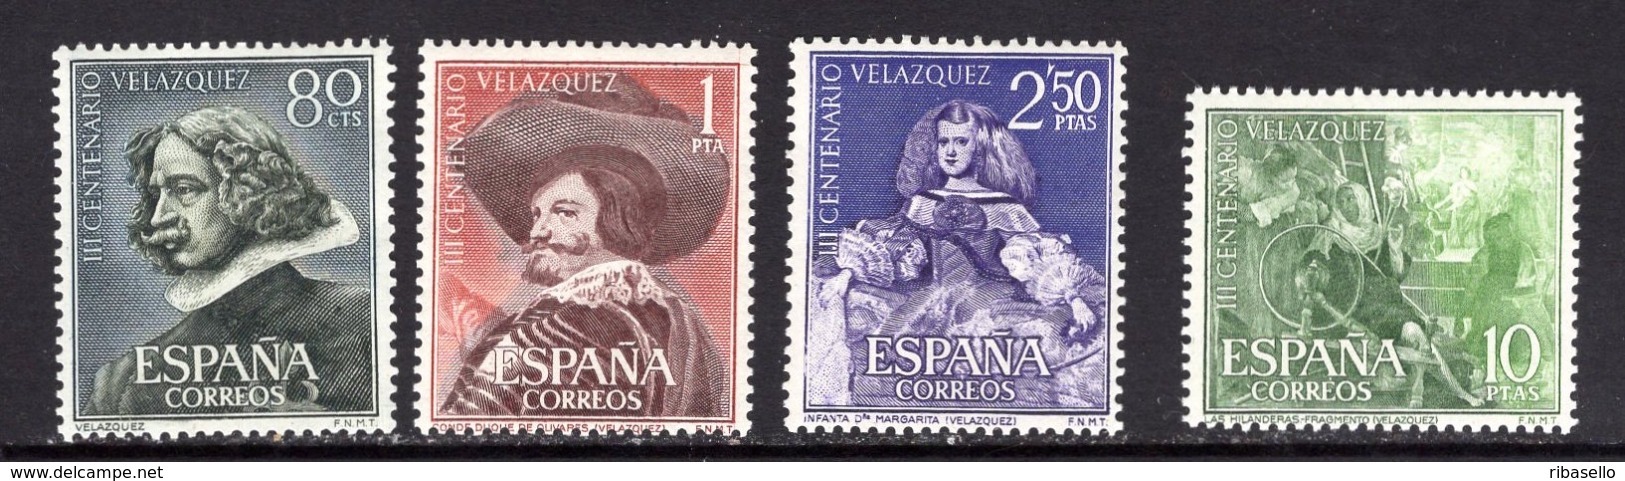 España 1961. Pintor Velazquez. Ed 1340 / 1343. MNH. **. - Nuevos